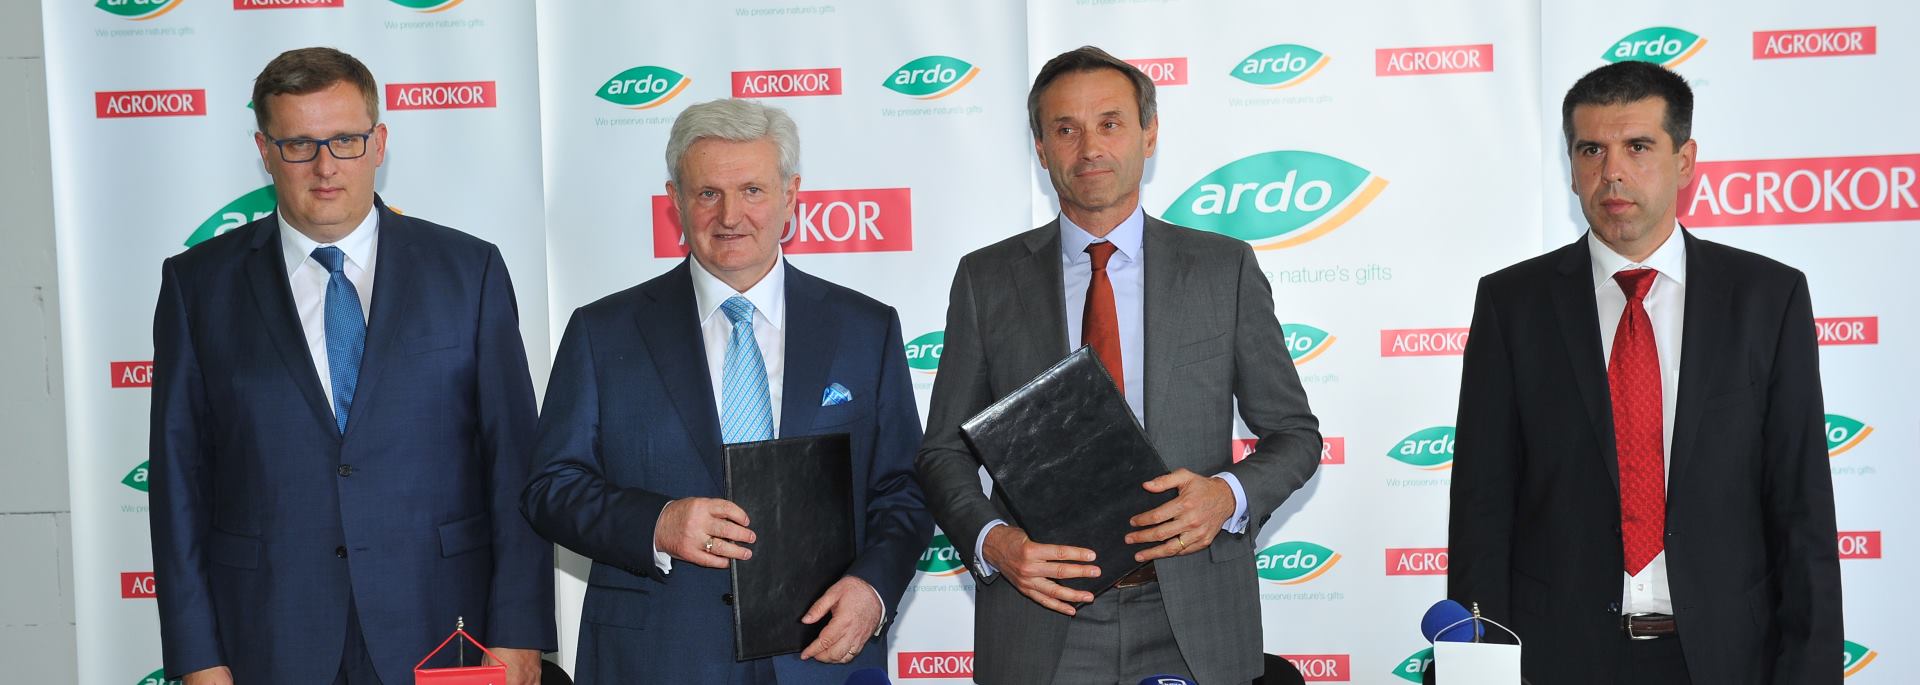 Agrokor i Ardo investirat će 400 milijuna kuna u tvrtku Vinka d.d.